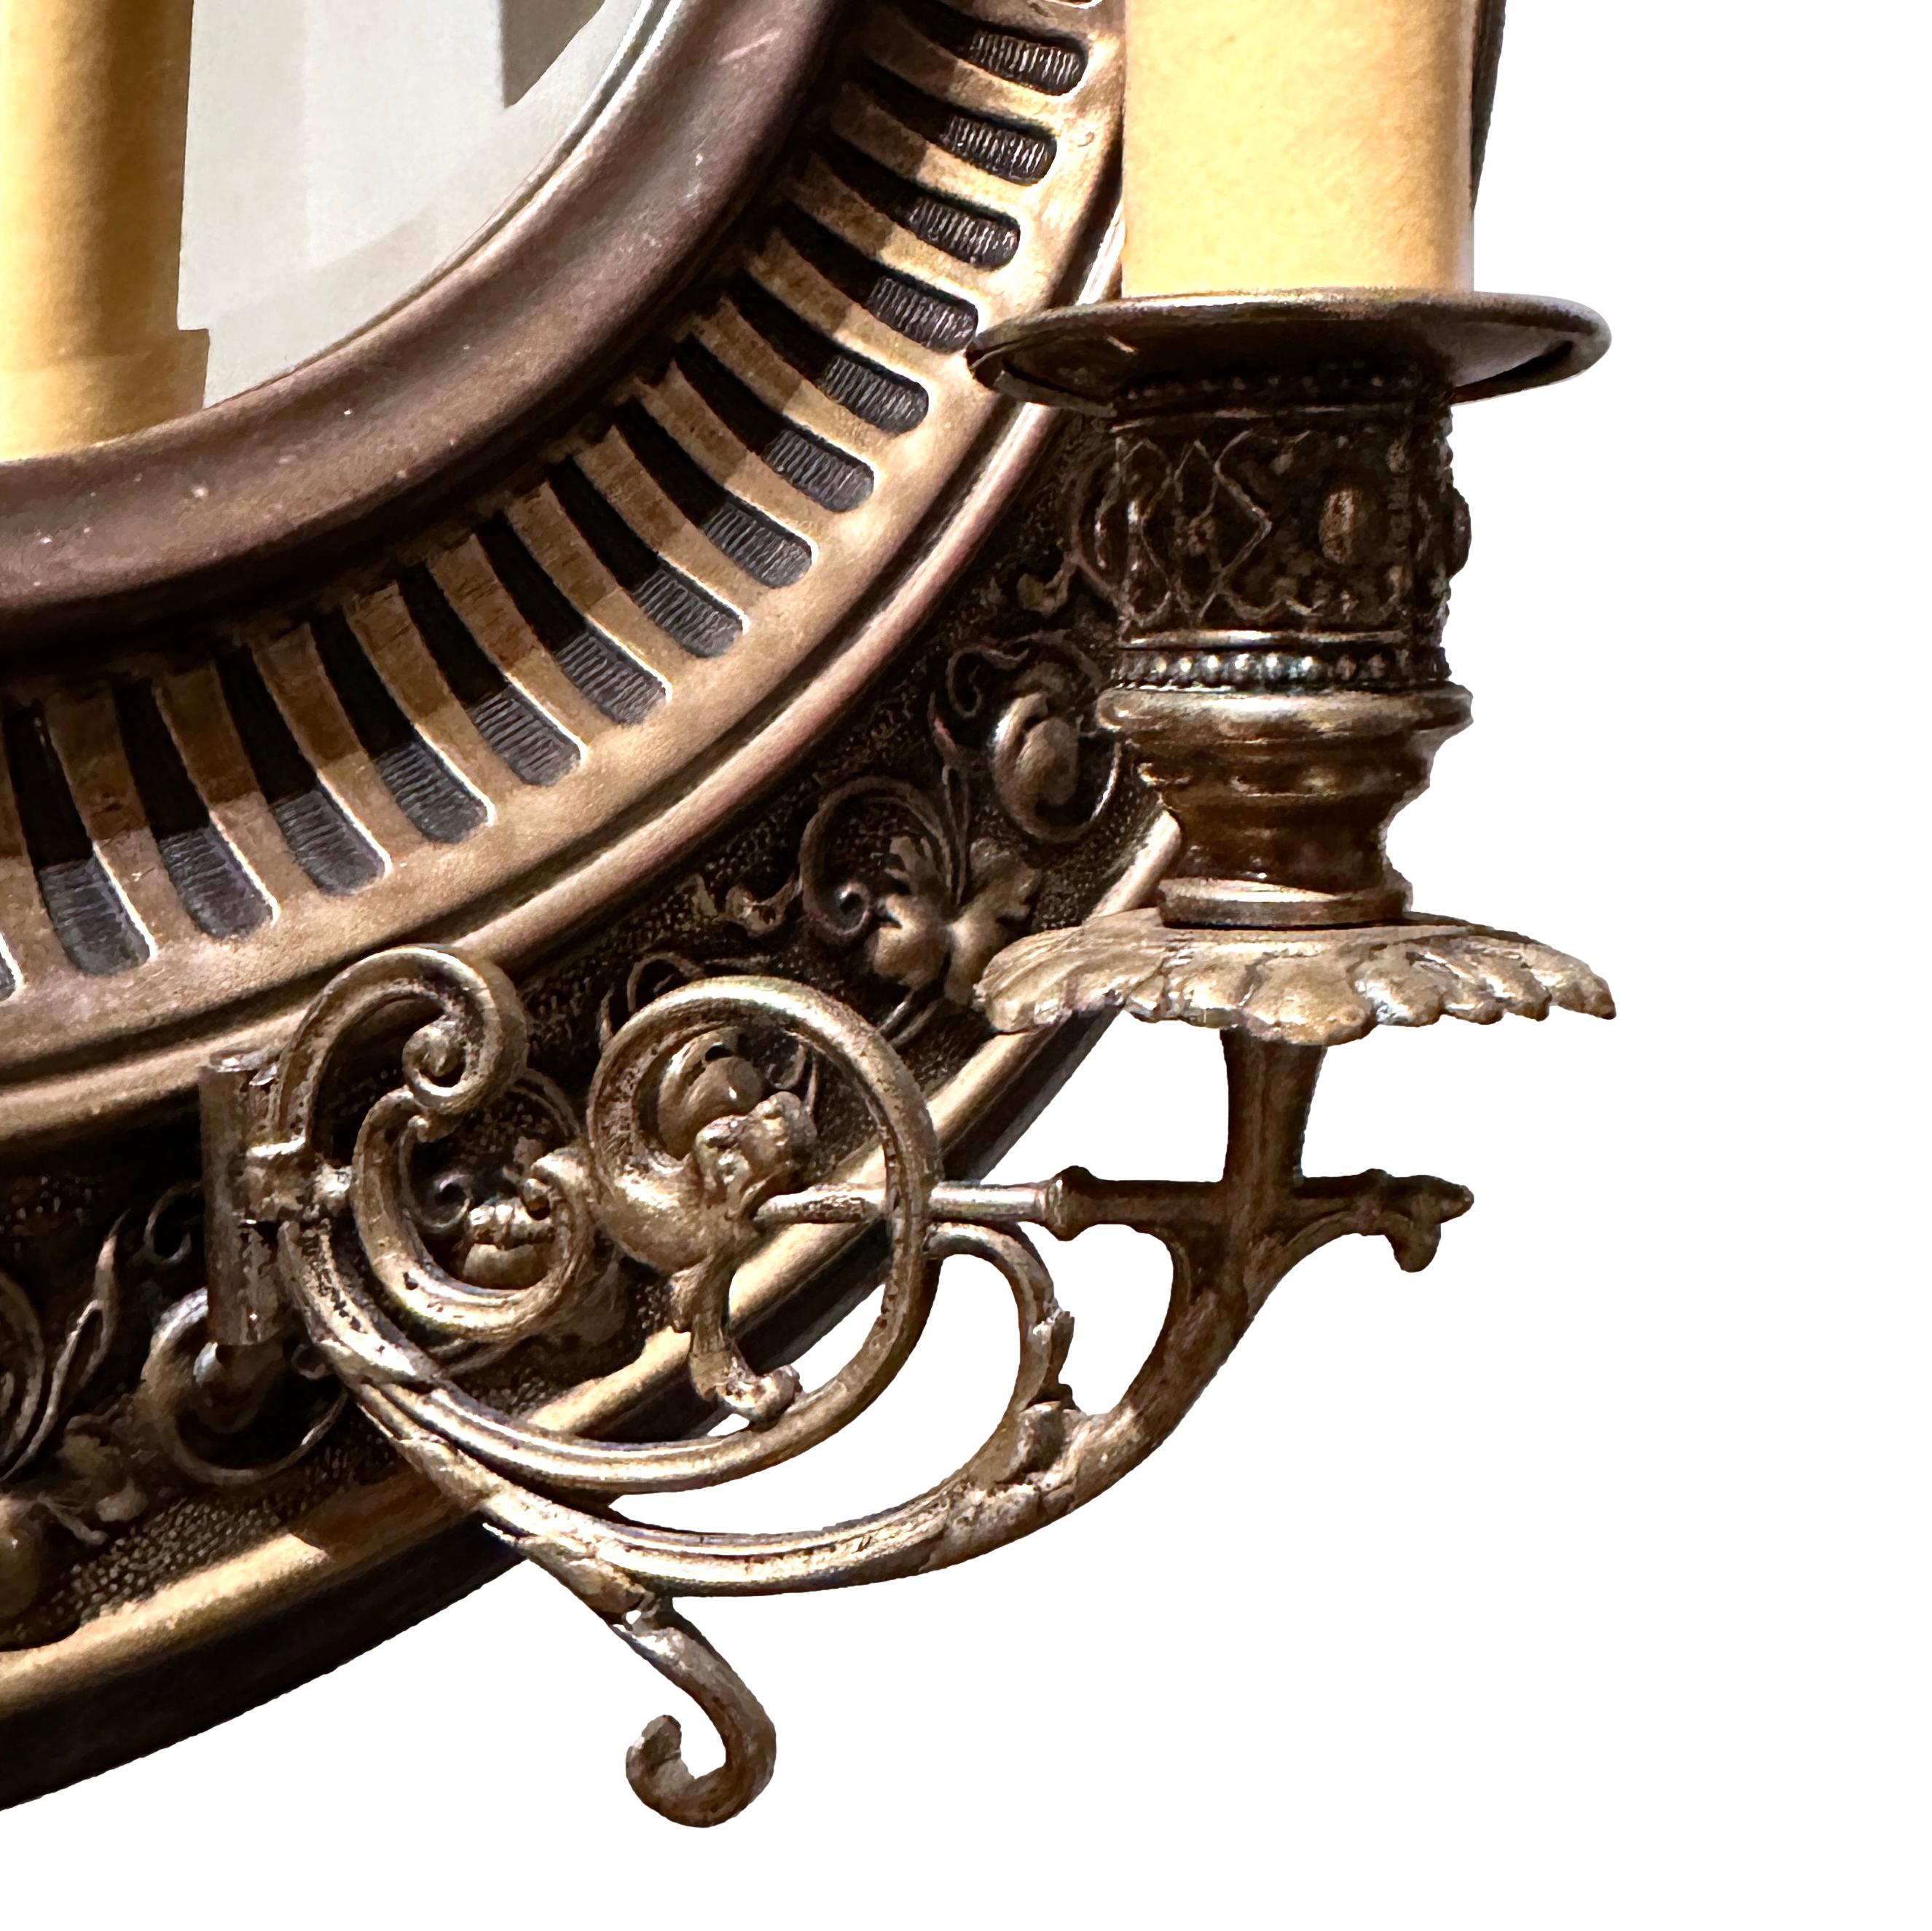 Paar englische repoussierte Messing- und Bronzewandleuchter aus dem späten 19. Jahrhundert mit originaler Patina. 

Abmessungen:
Durchmesser: 16,5